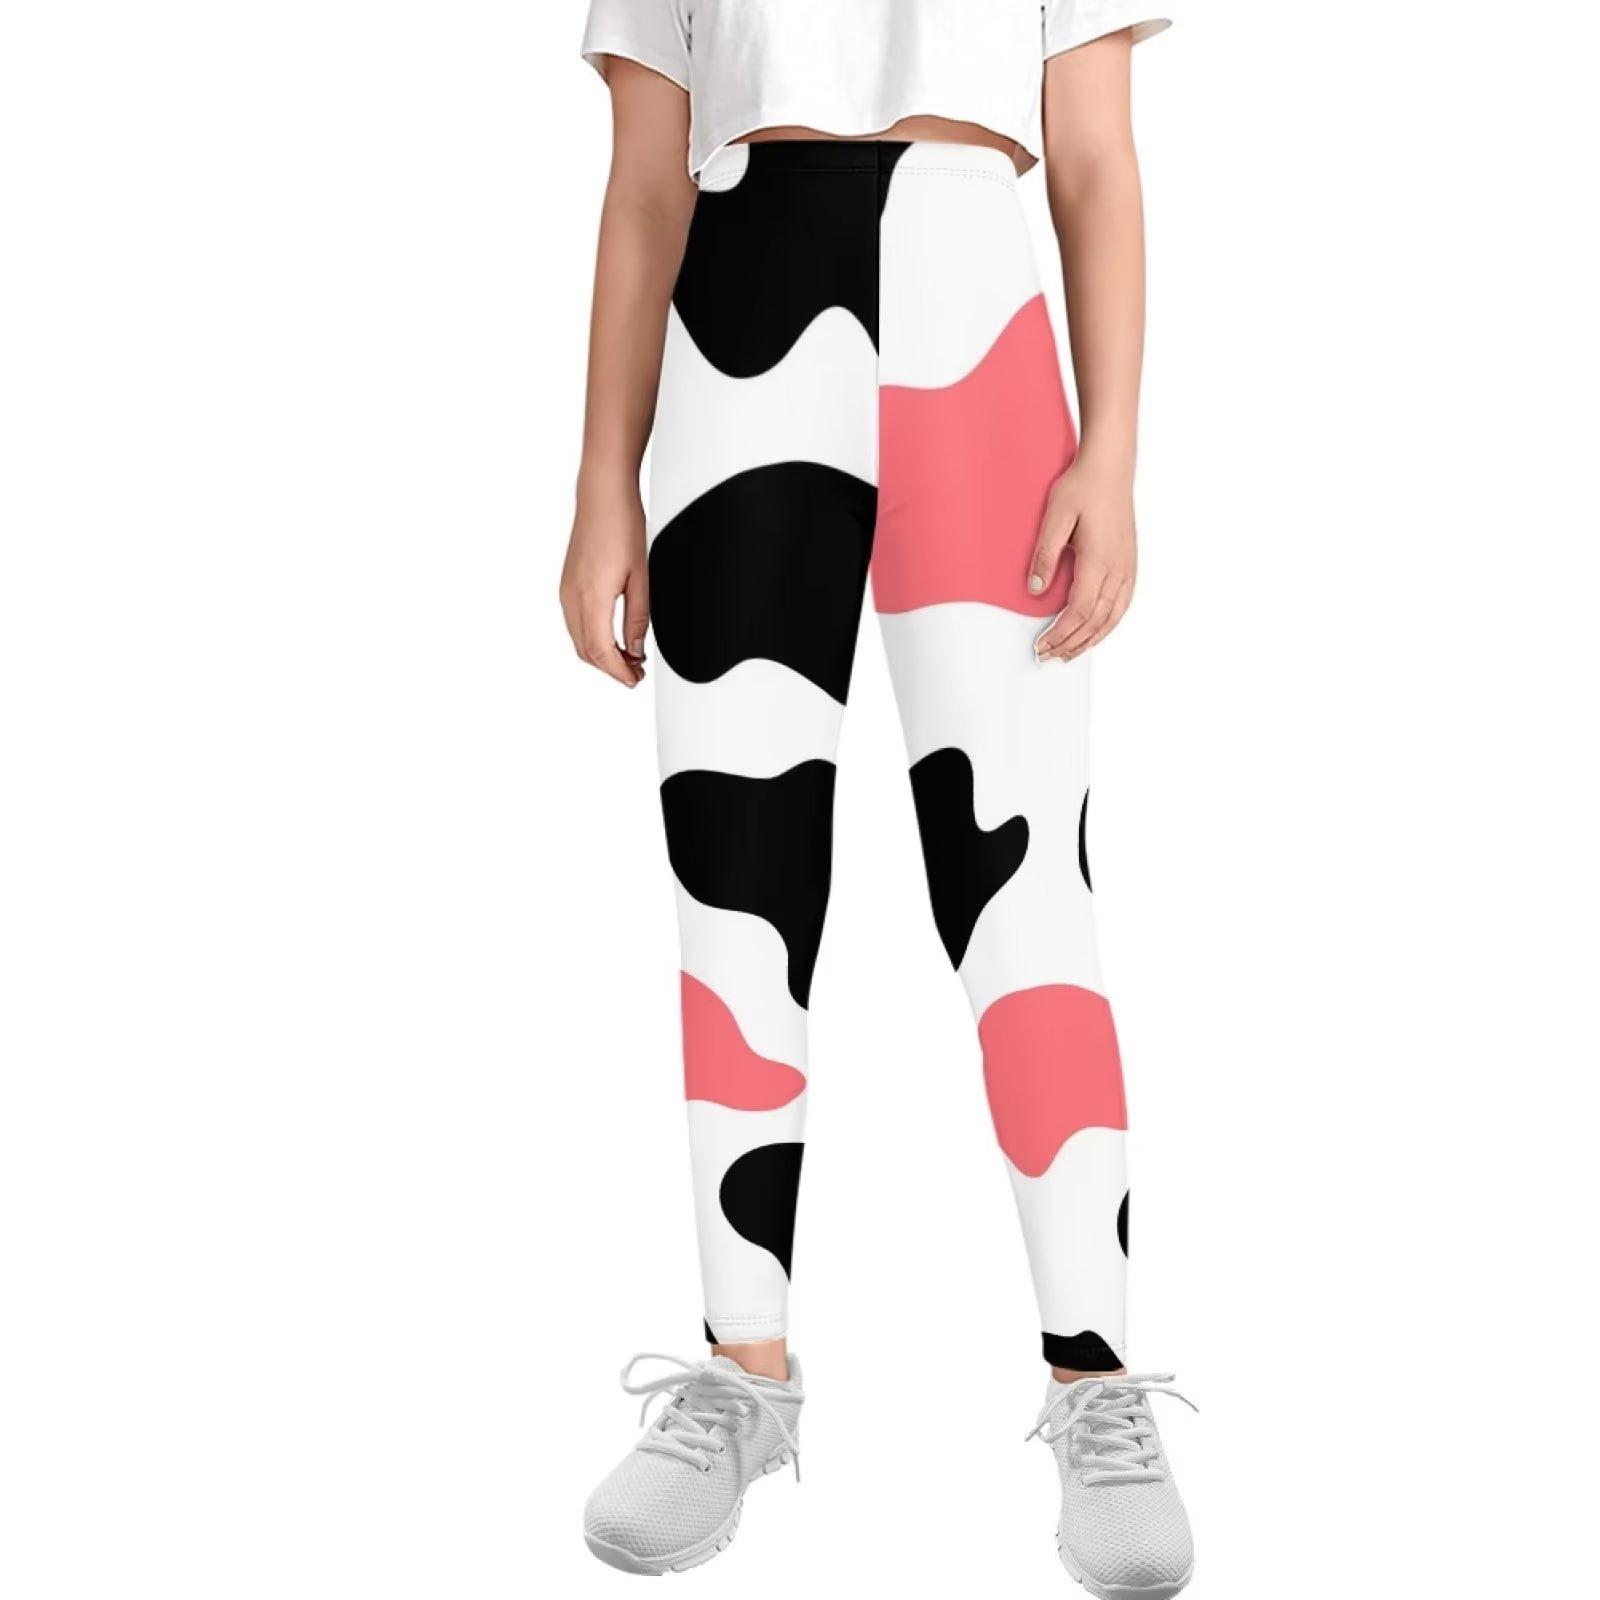 FKELYI Cow Print Kids Leggings Size 10-11 Years Elastic School